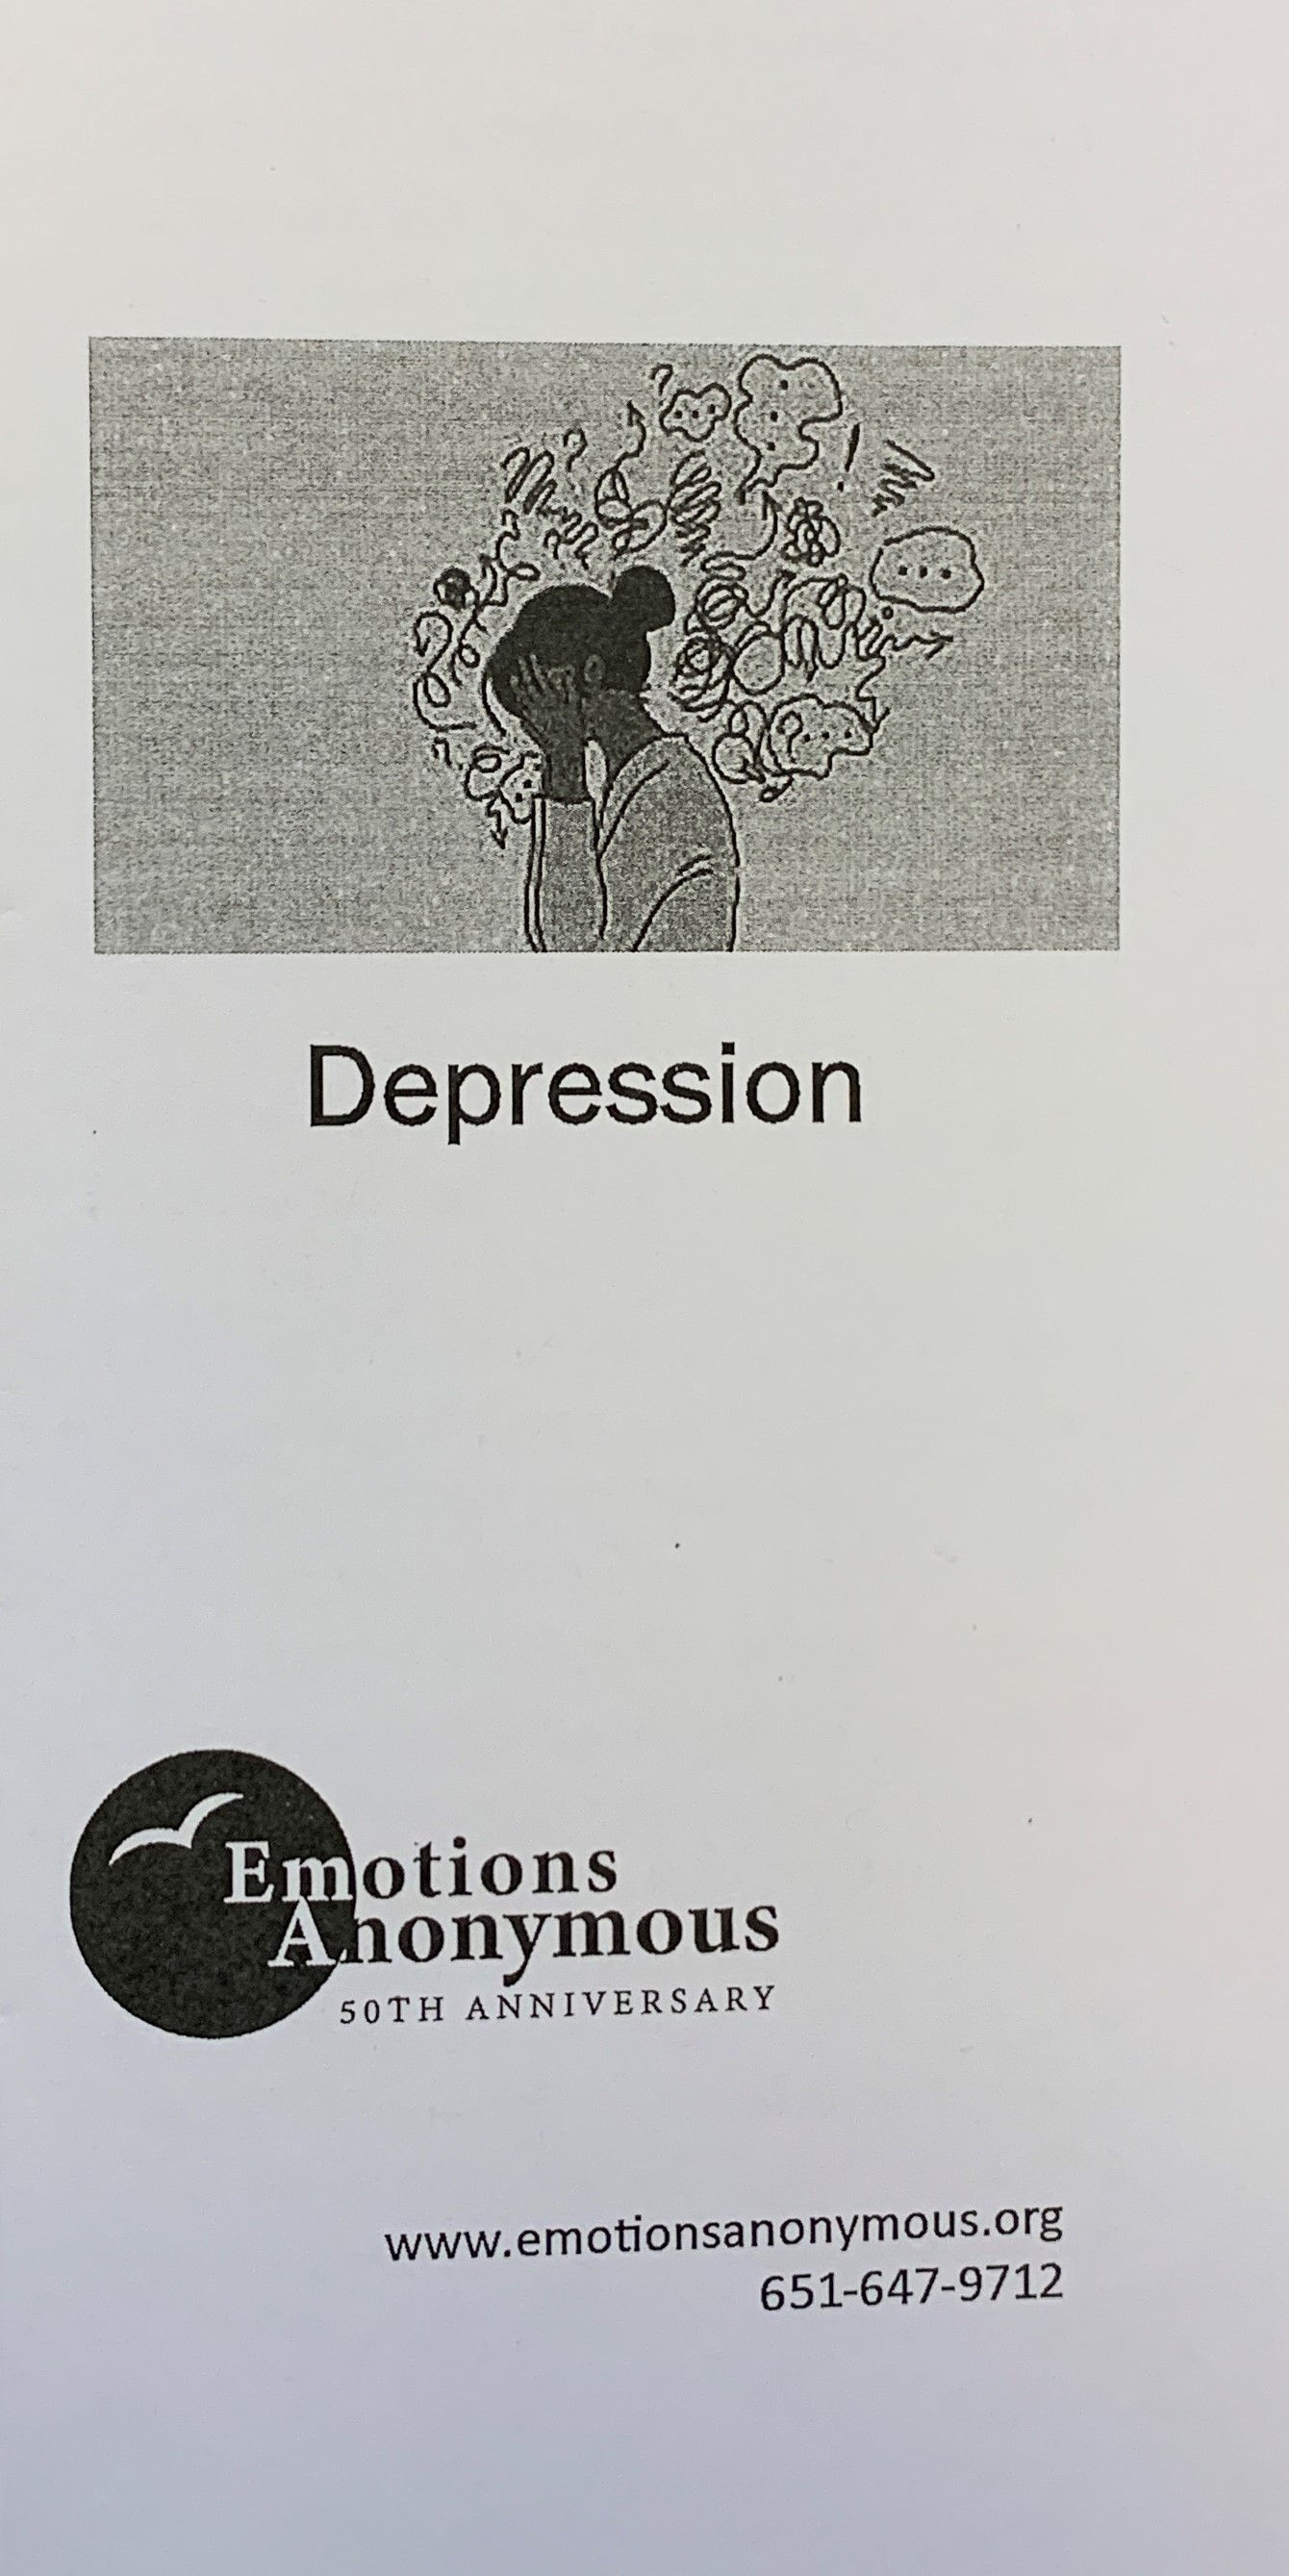 Item #54 — "Depression" Pamphlet (Revised in 2021)